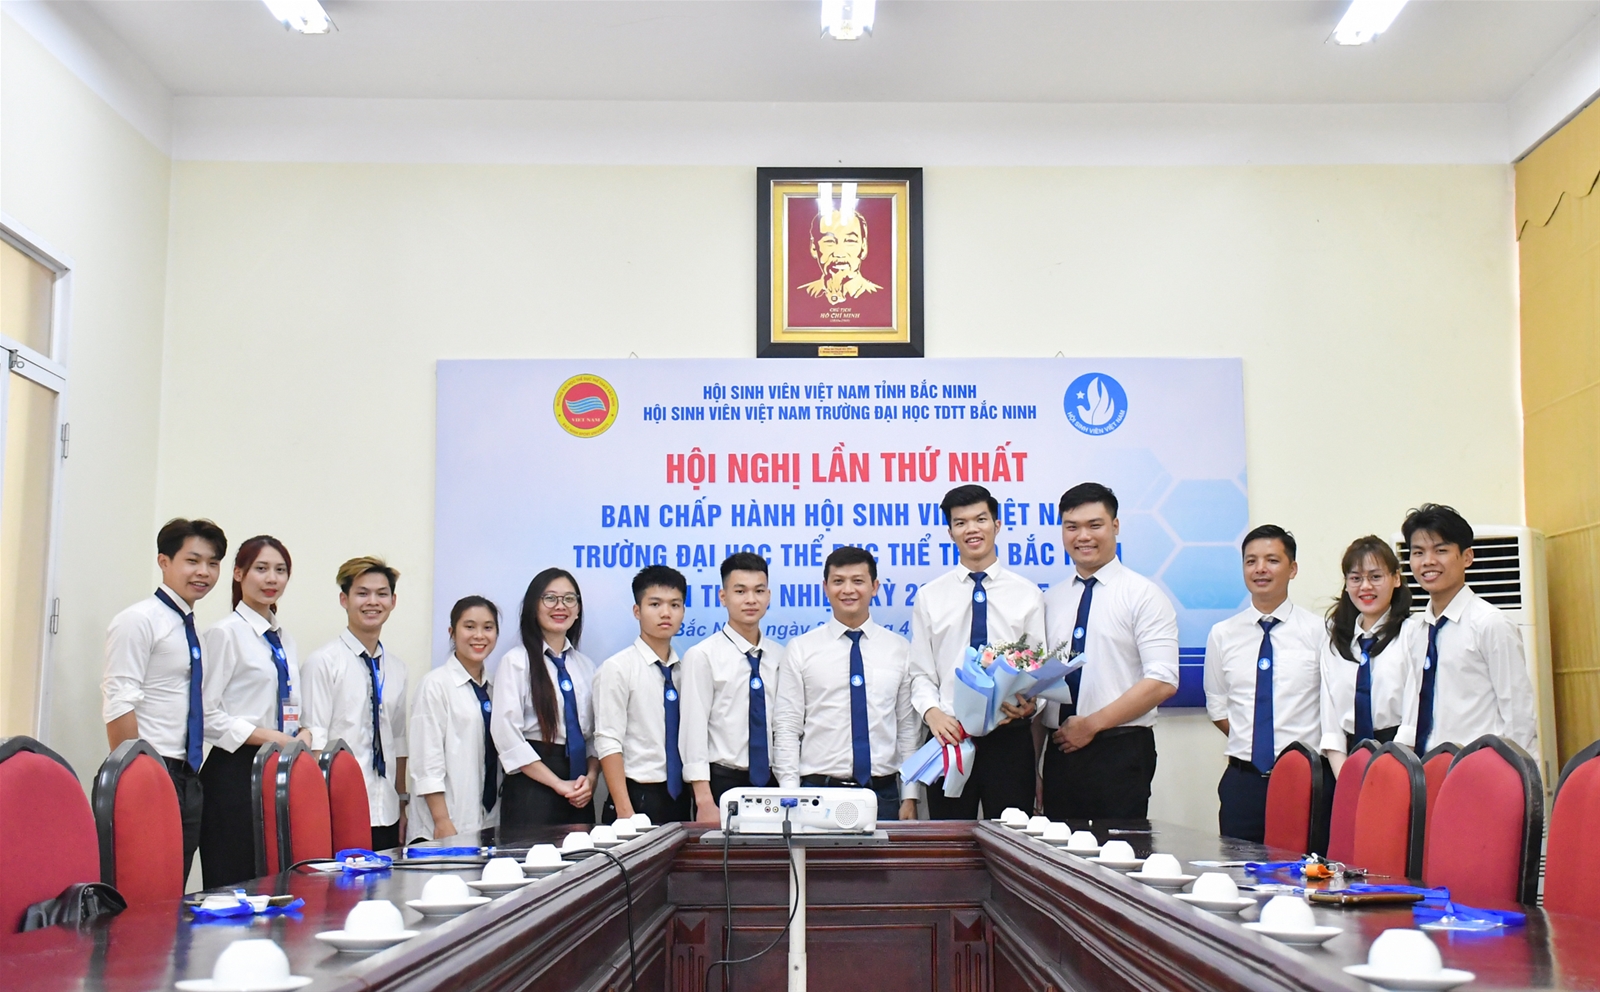 Hội nghị lần thứ nhất Ban chấp hành Hội sinh viên Việt Nam Trường đại học TDTT Bắc Ninh đã tổ chức thành công hiệp thương bầu các chức danh lãnh đạo Hội sinh viên trường khoá V, nhiệm kỳ 2023-2025